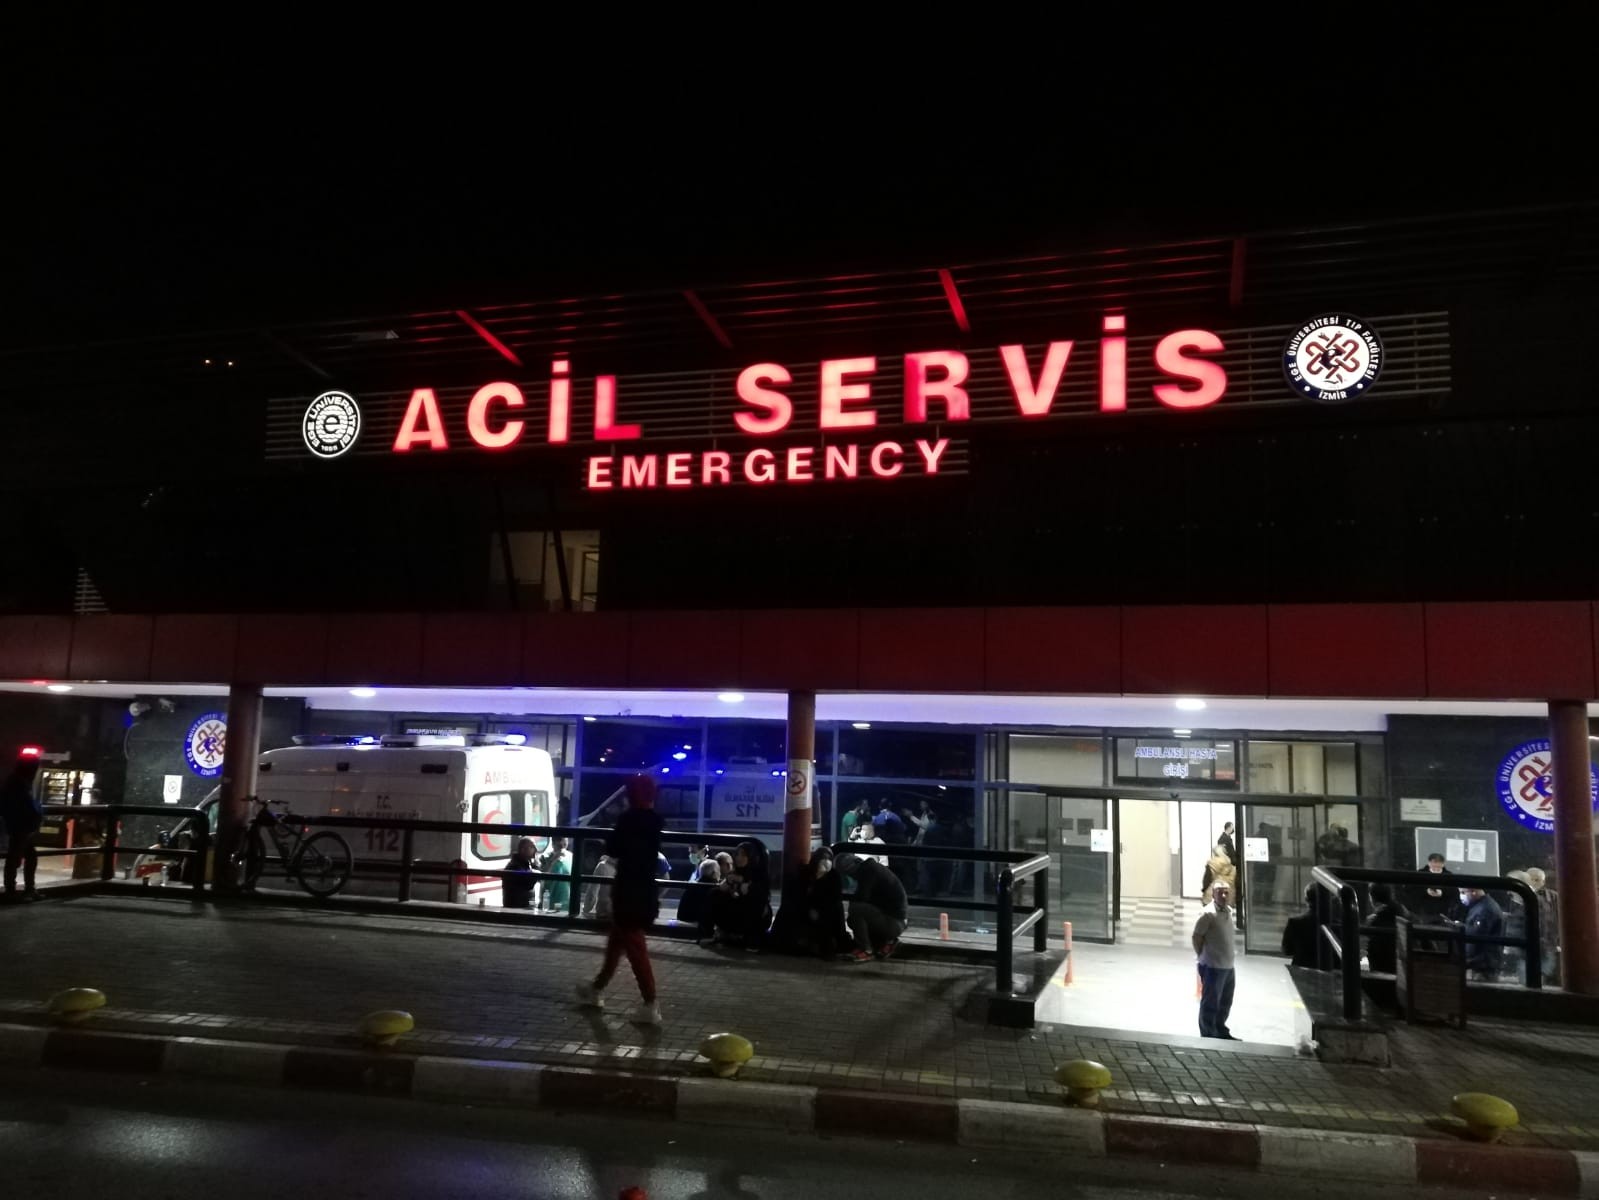 İzmir’de ‘küfürleşme’ kavgası kanlı bitti: 1 ölü, 5 yaralı #izmir